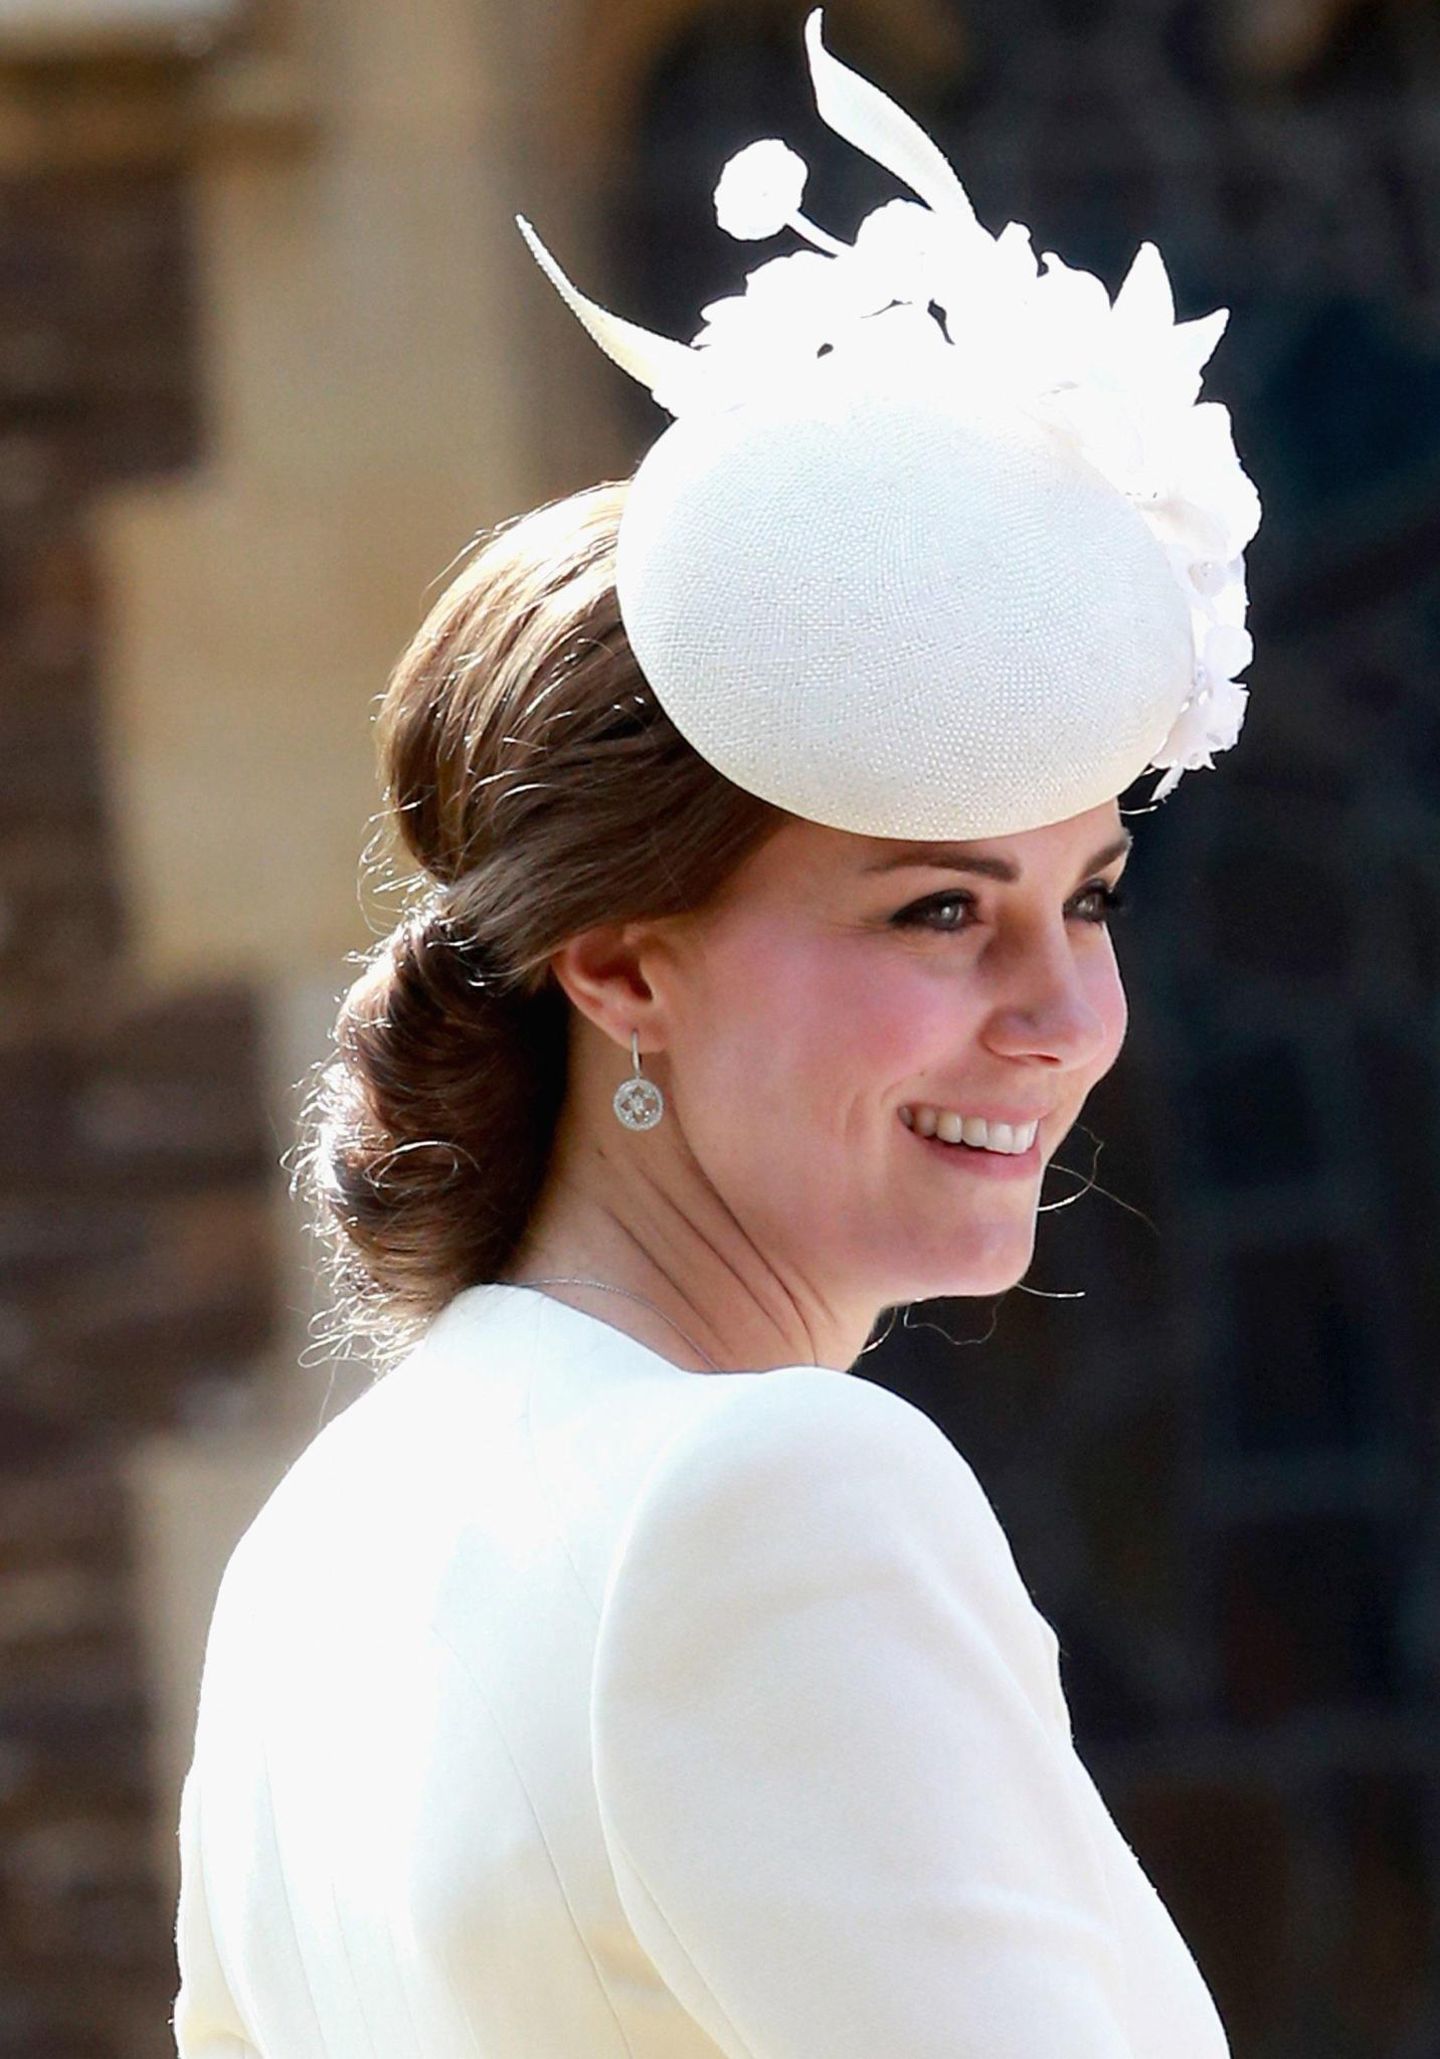 Herzogin Catherine sieht an diesem besonderen Tag wieder strahlend schön aus.